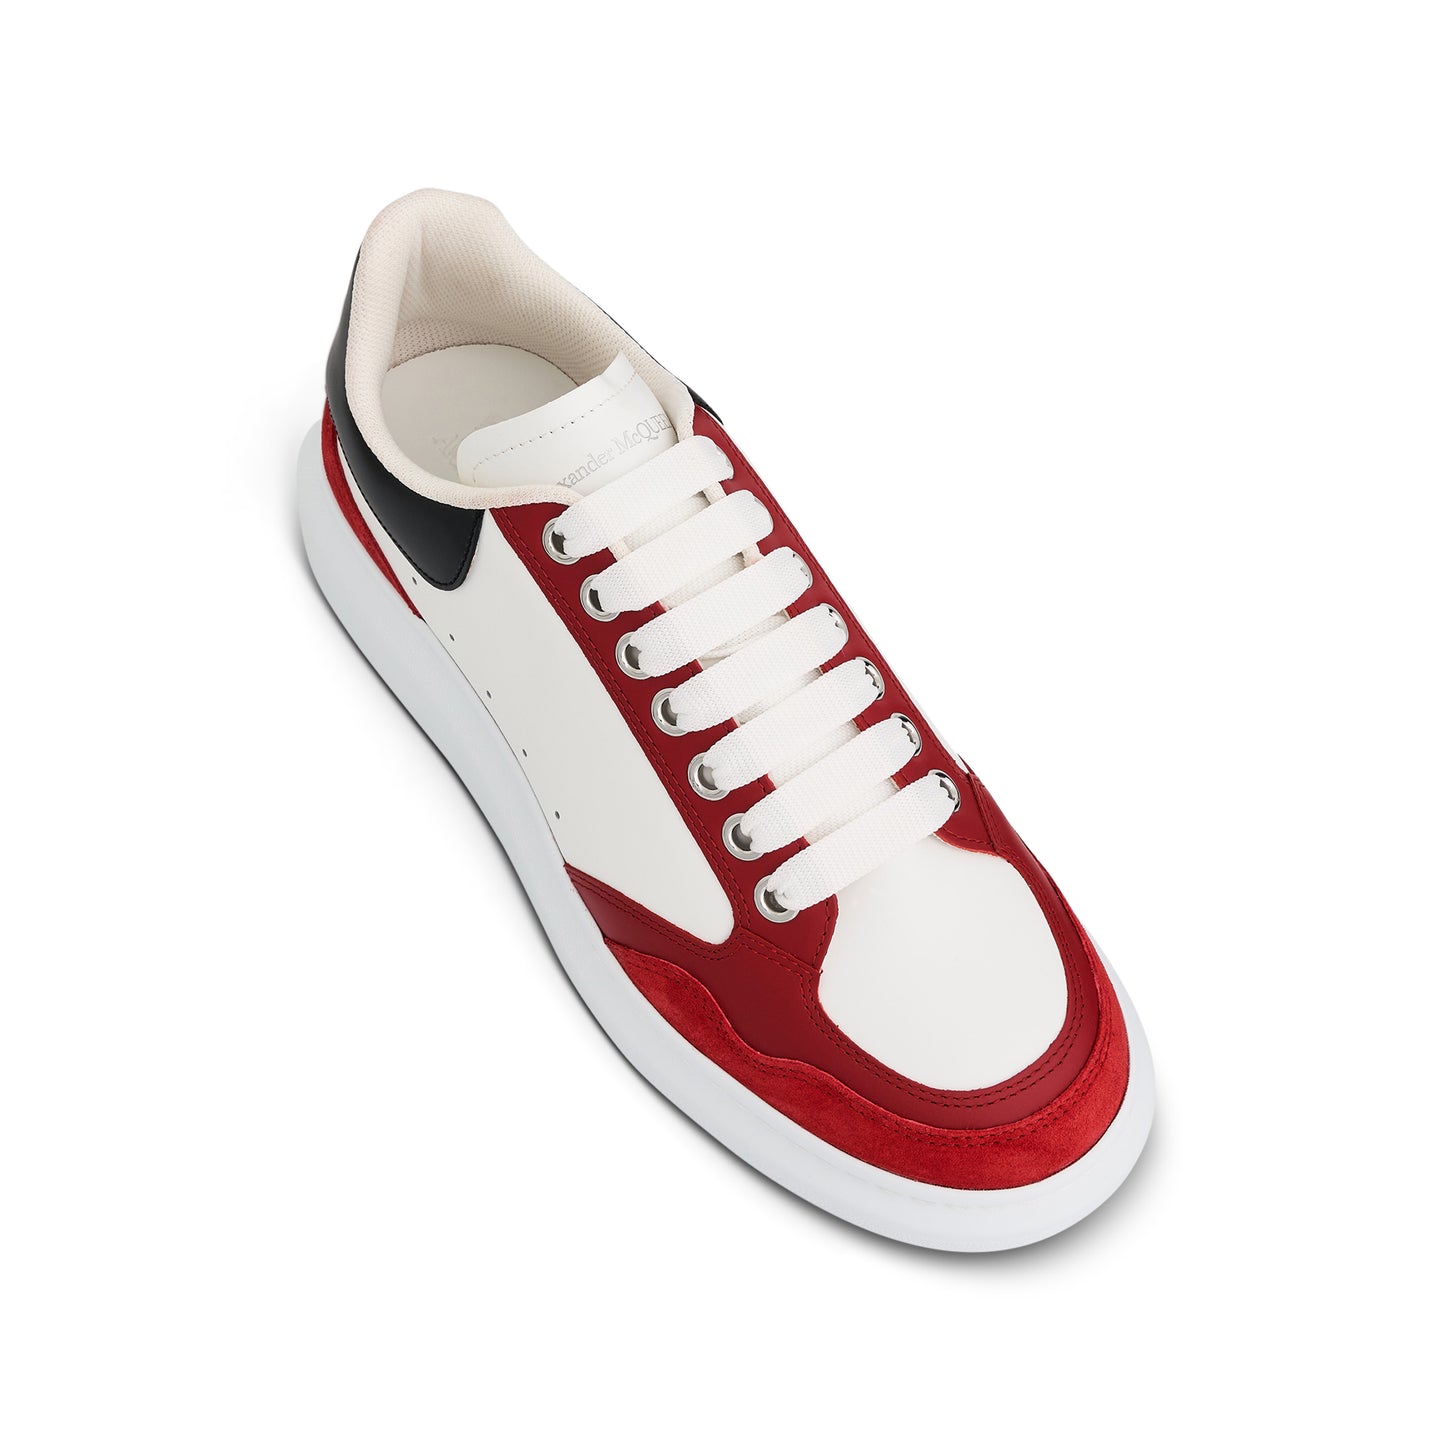 Larry Oversized Sensory Sneaker in White/Black/Welsh Red